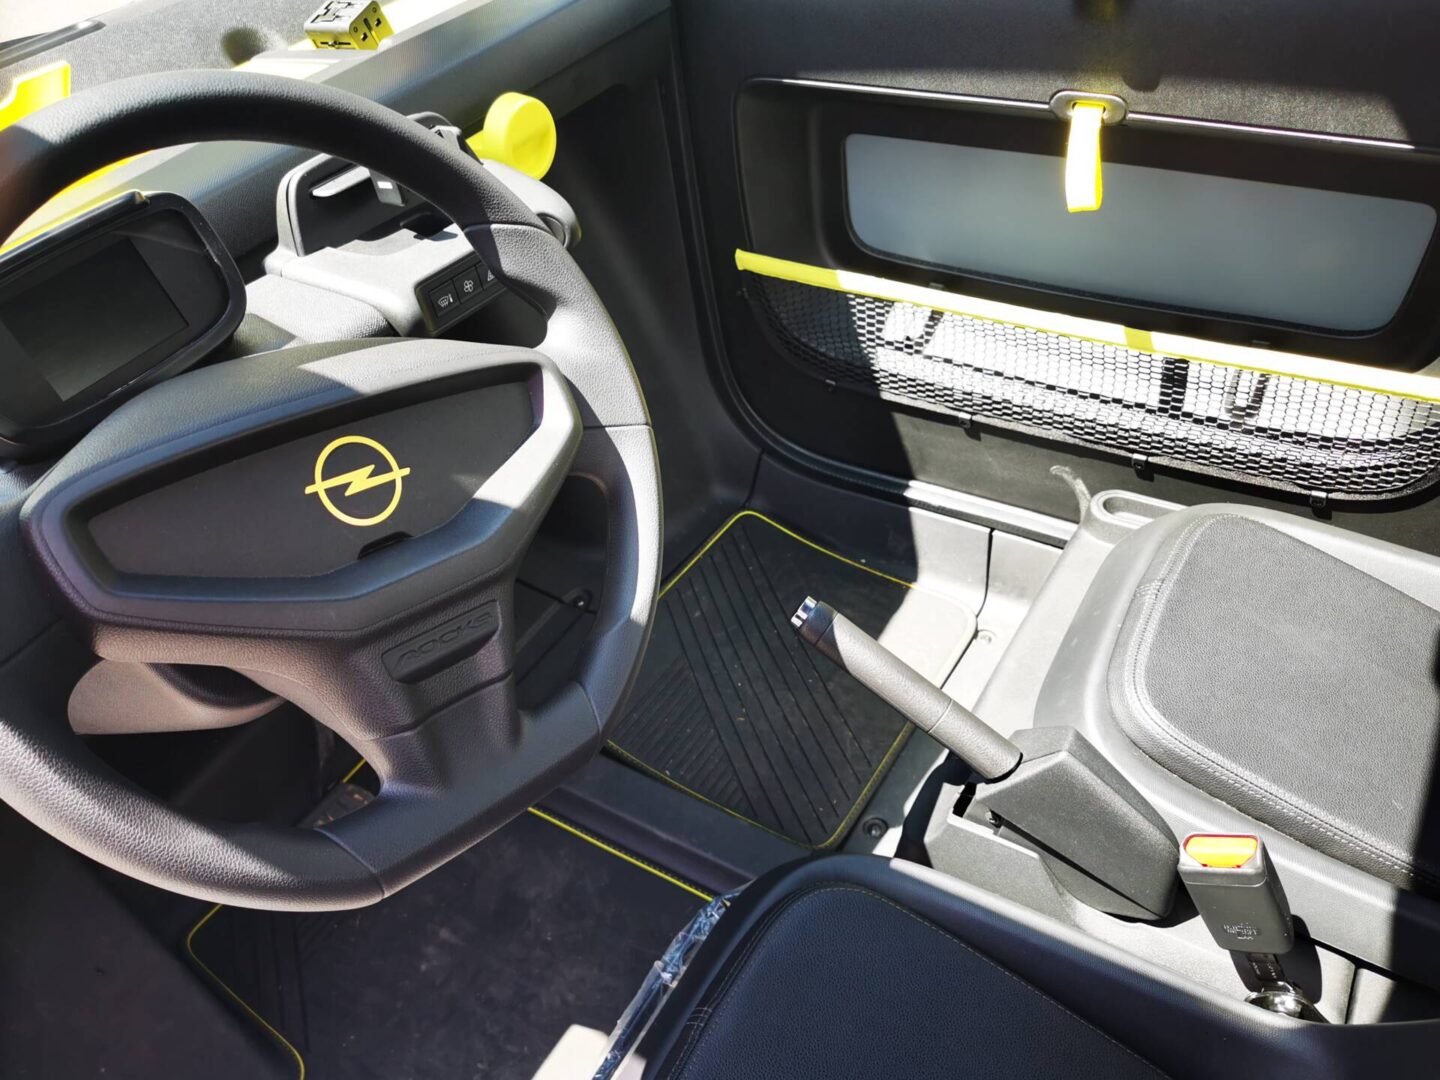 el Opel Rocks-e tiene una batería de 5,5 kWh, se puede recargarse hasta en 4 horas en un tomacorriente común de 110 voltios. V12MAGAZINE